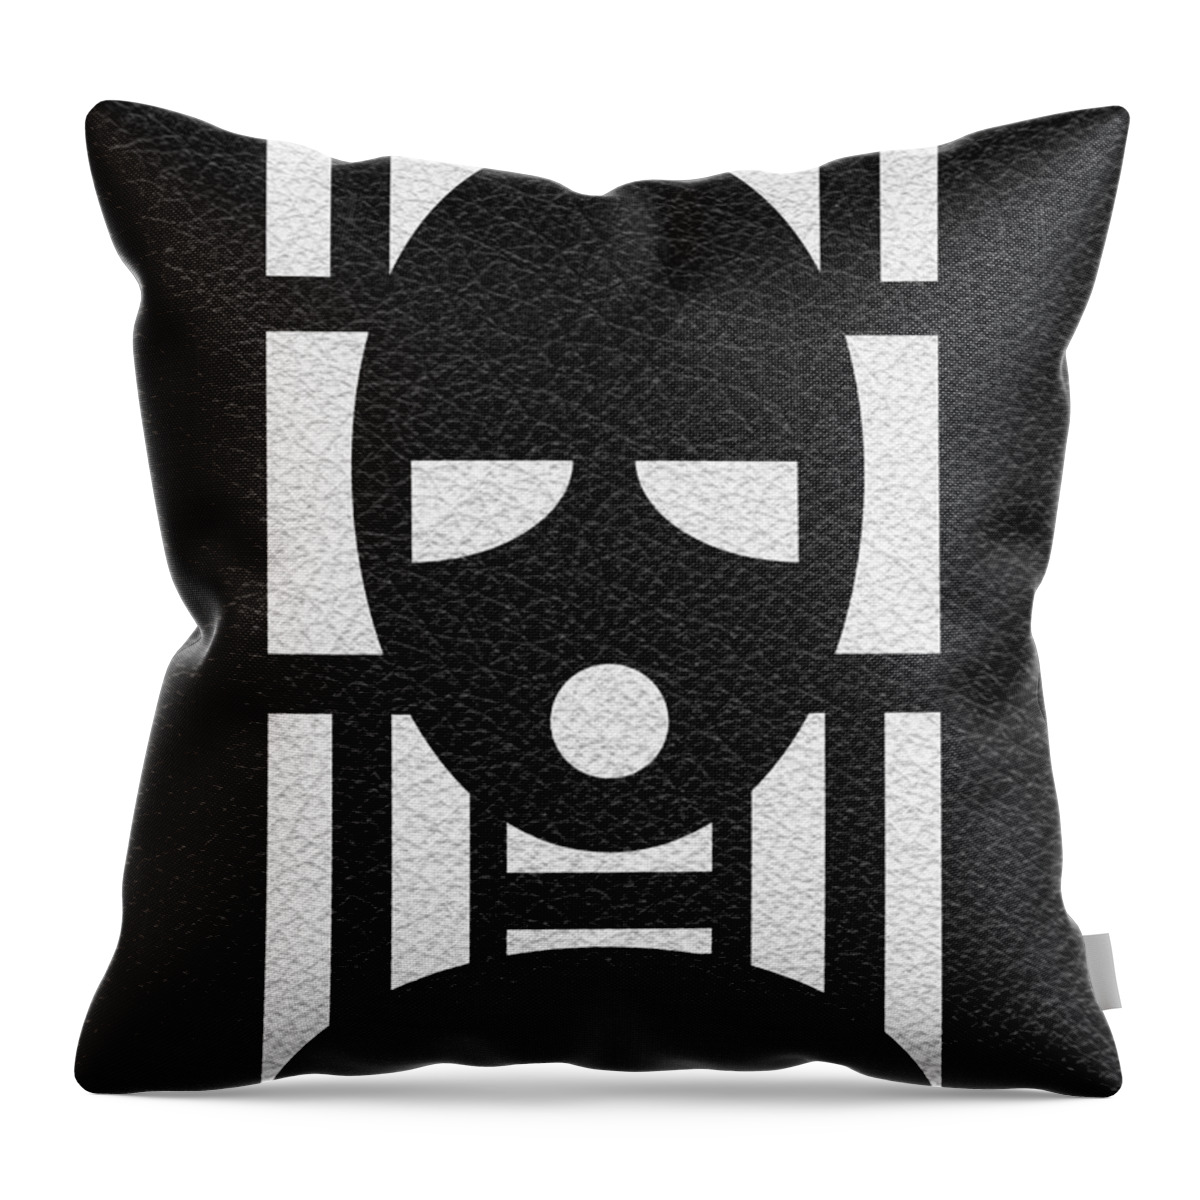 Gimp Throw Pillow featuring the digital art Gimp Mask by Roseanne Jones